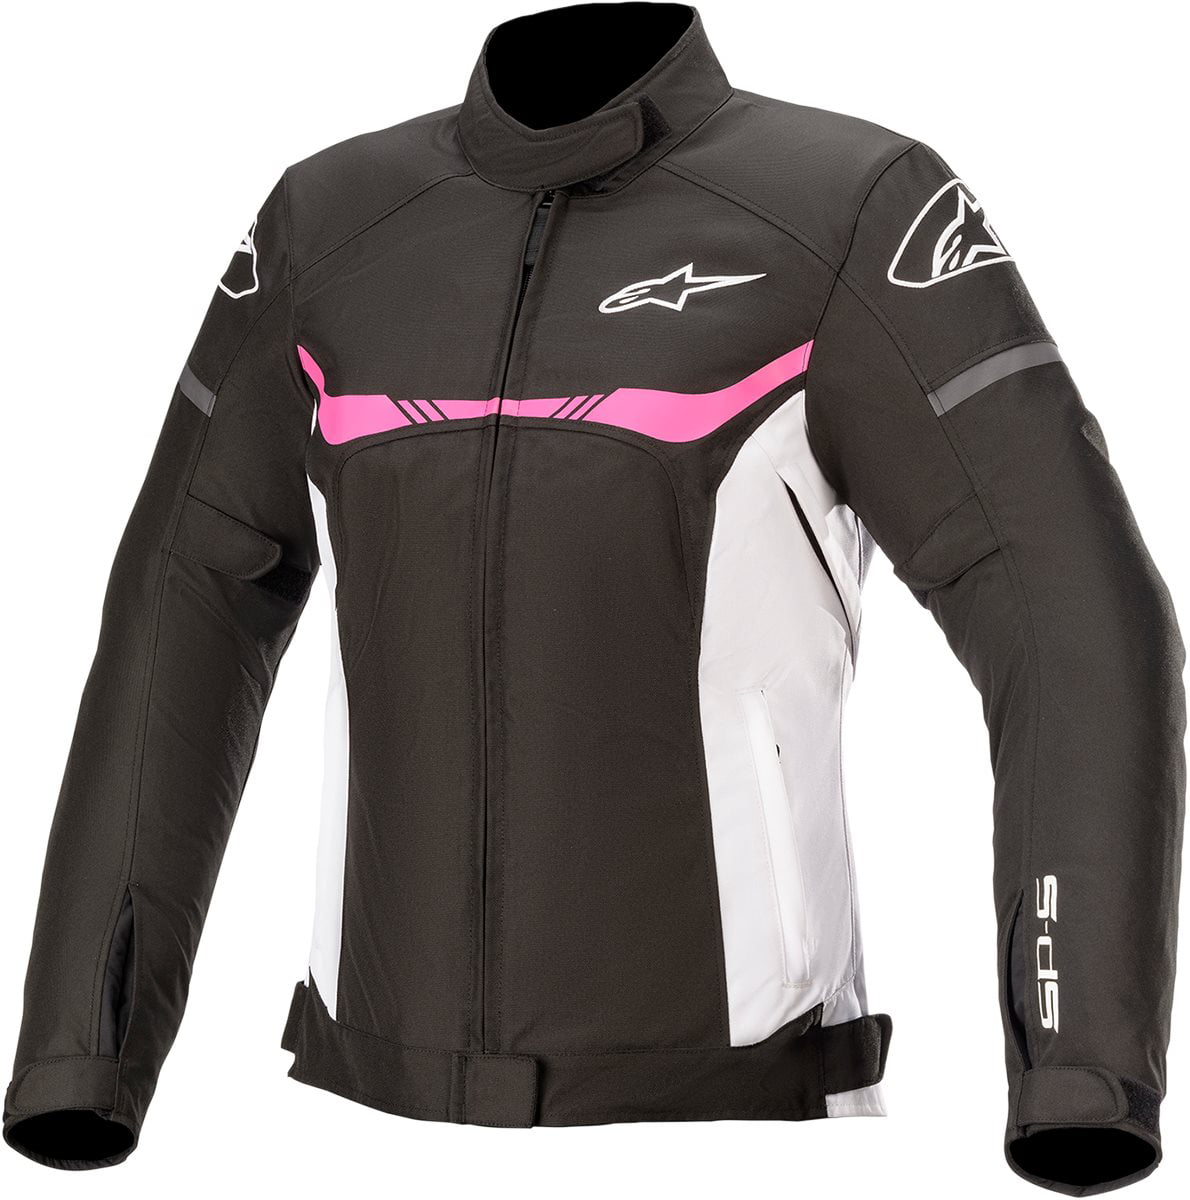 Black Friday Ladies Women Motorbike Motorcycle Textile Waterproof Jacket Coat